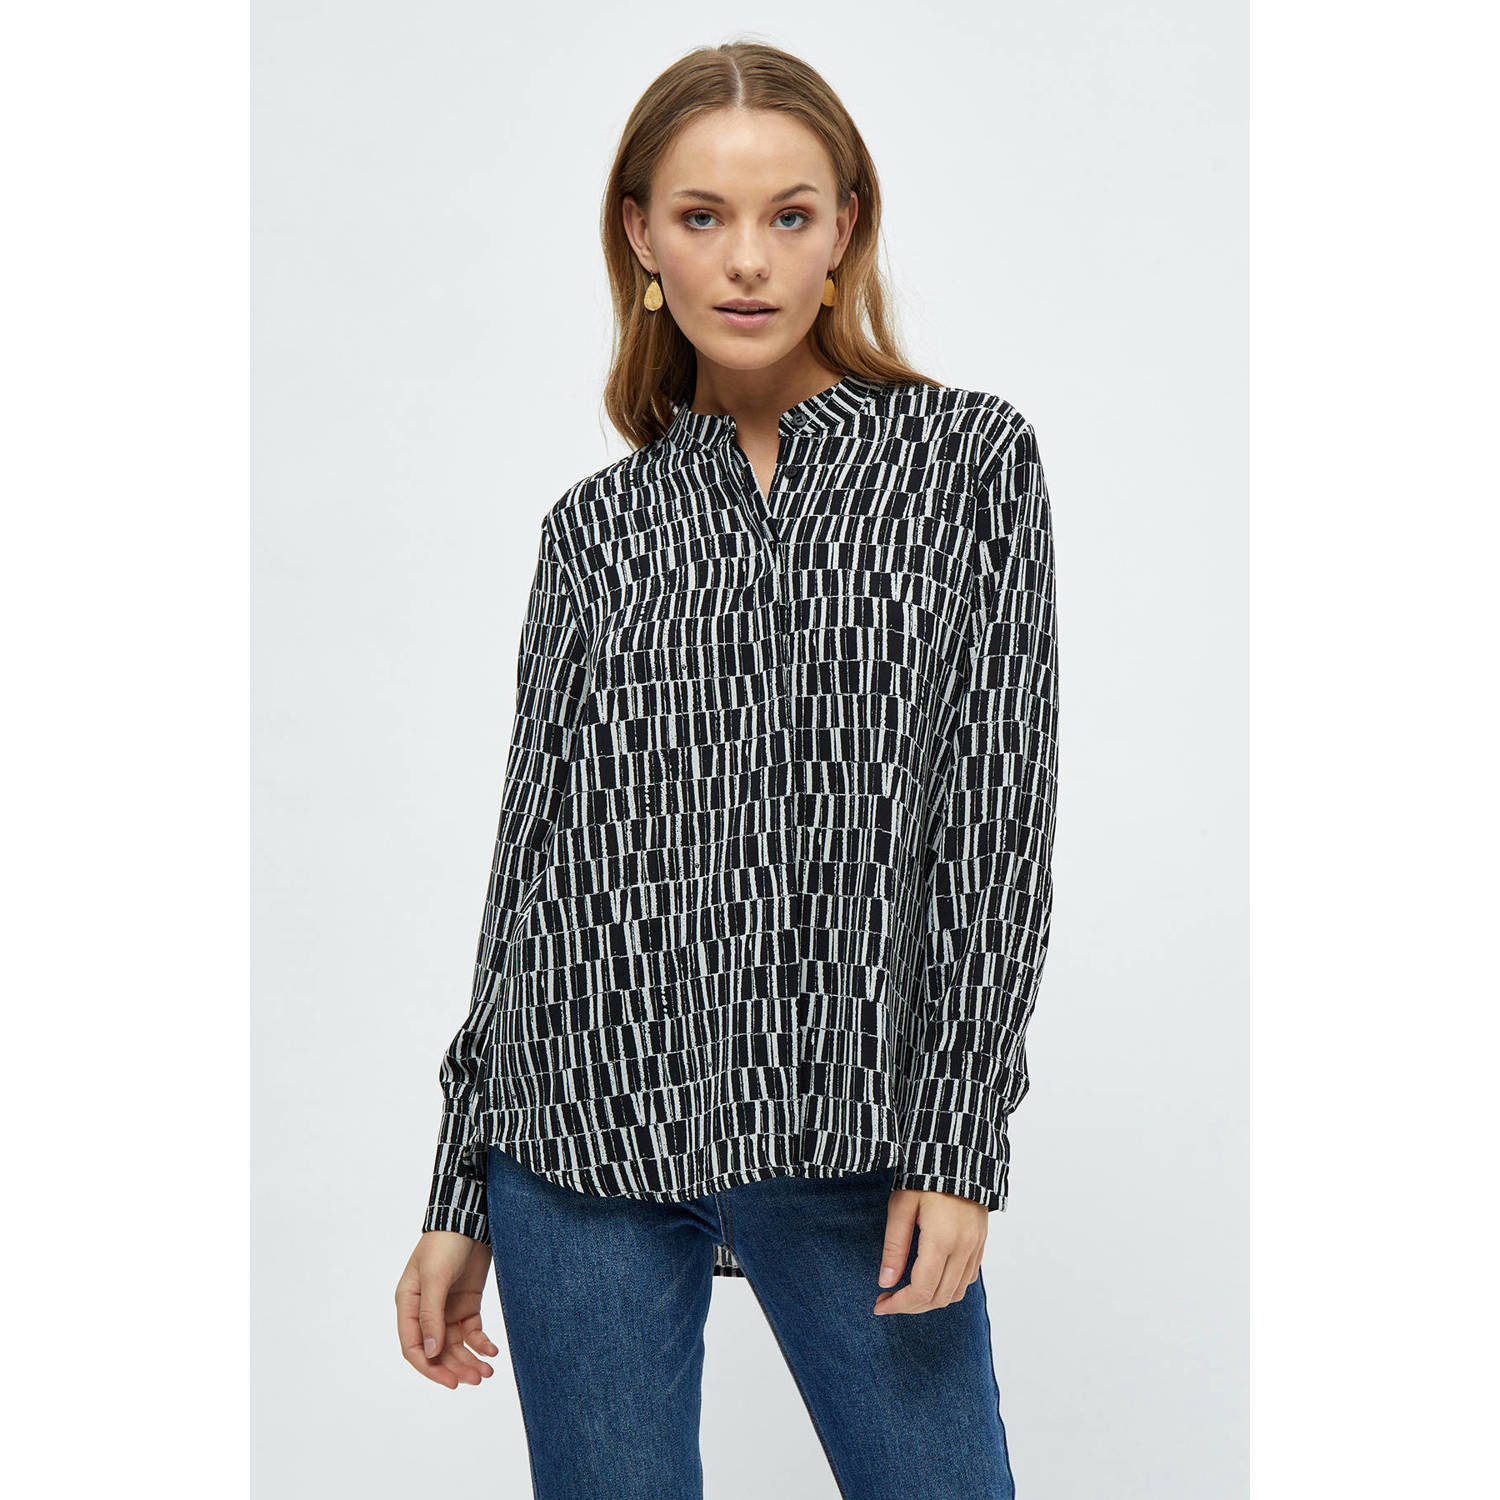 Peppercorn blouse Philippa Long Sleeve Shirt met all over print zwart grijs